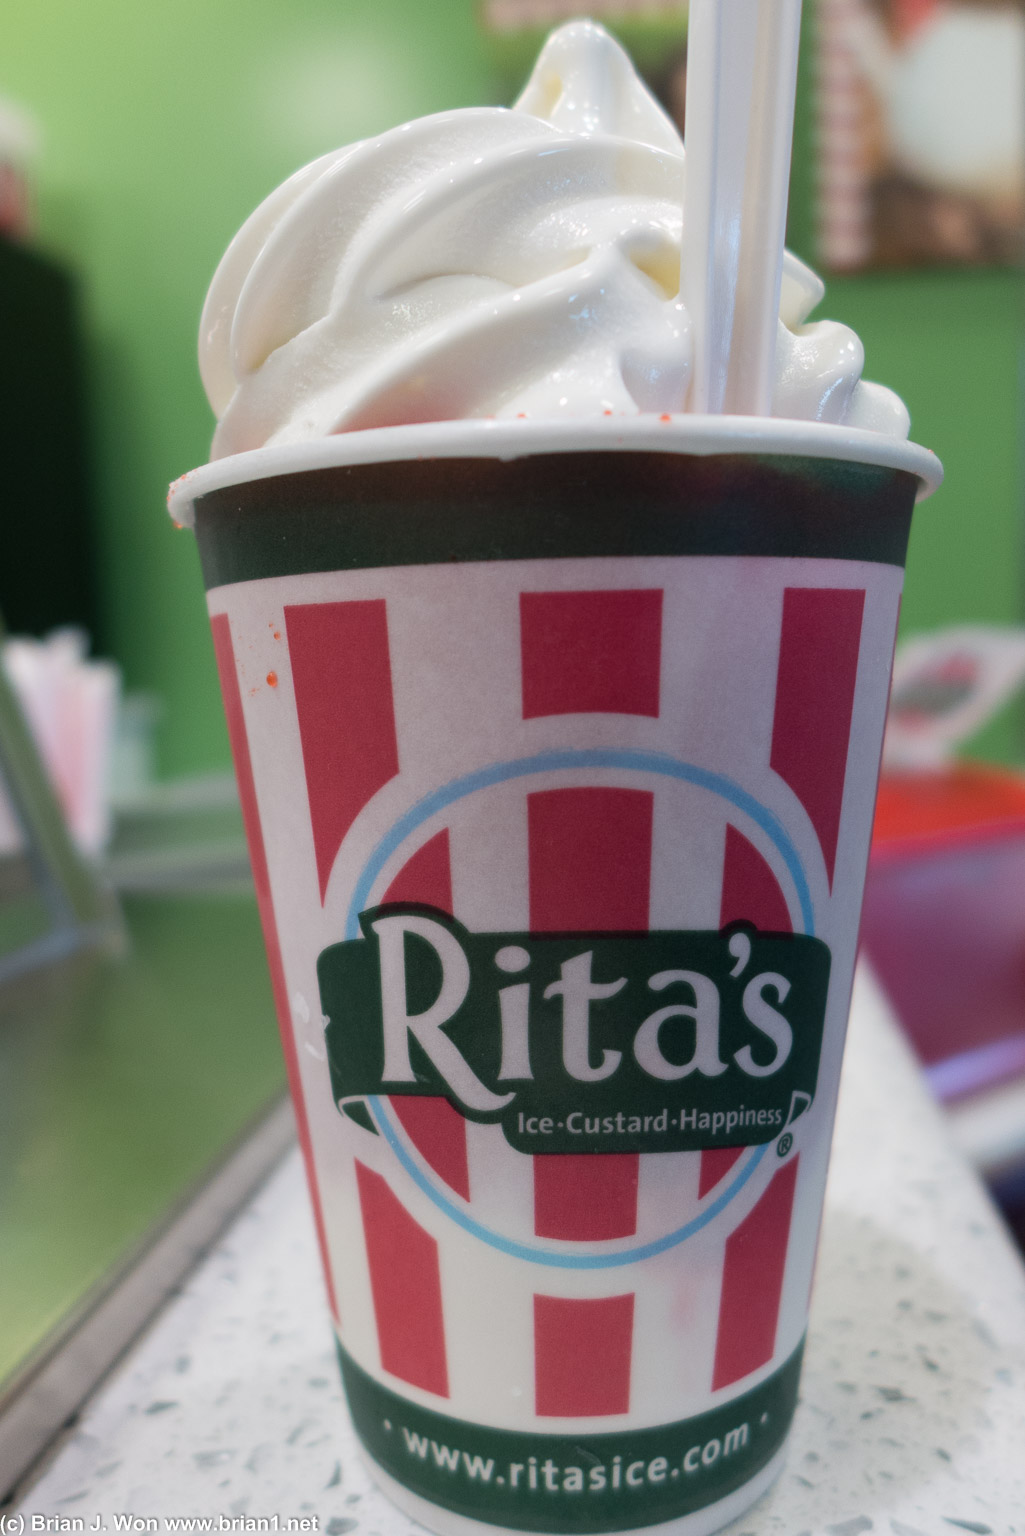 Rita's for dessert.